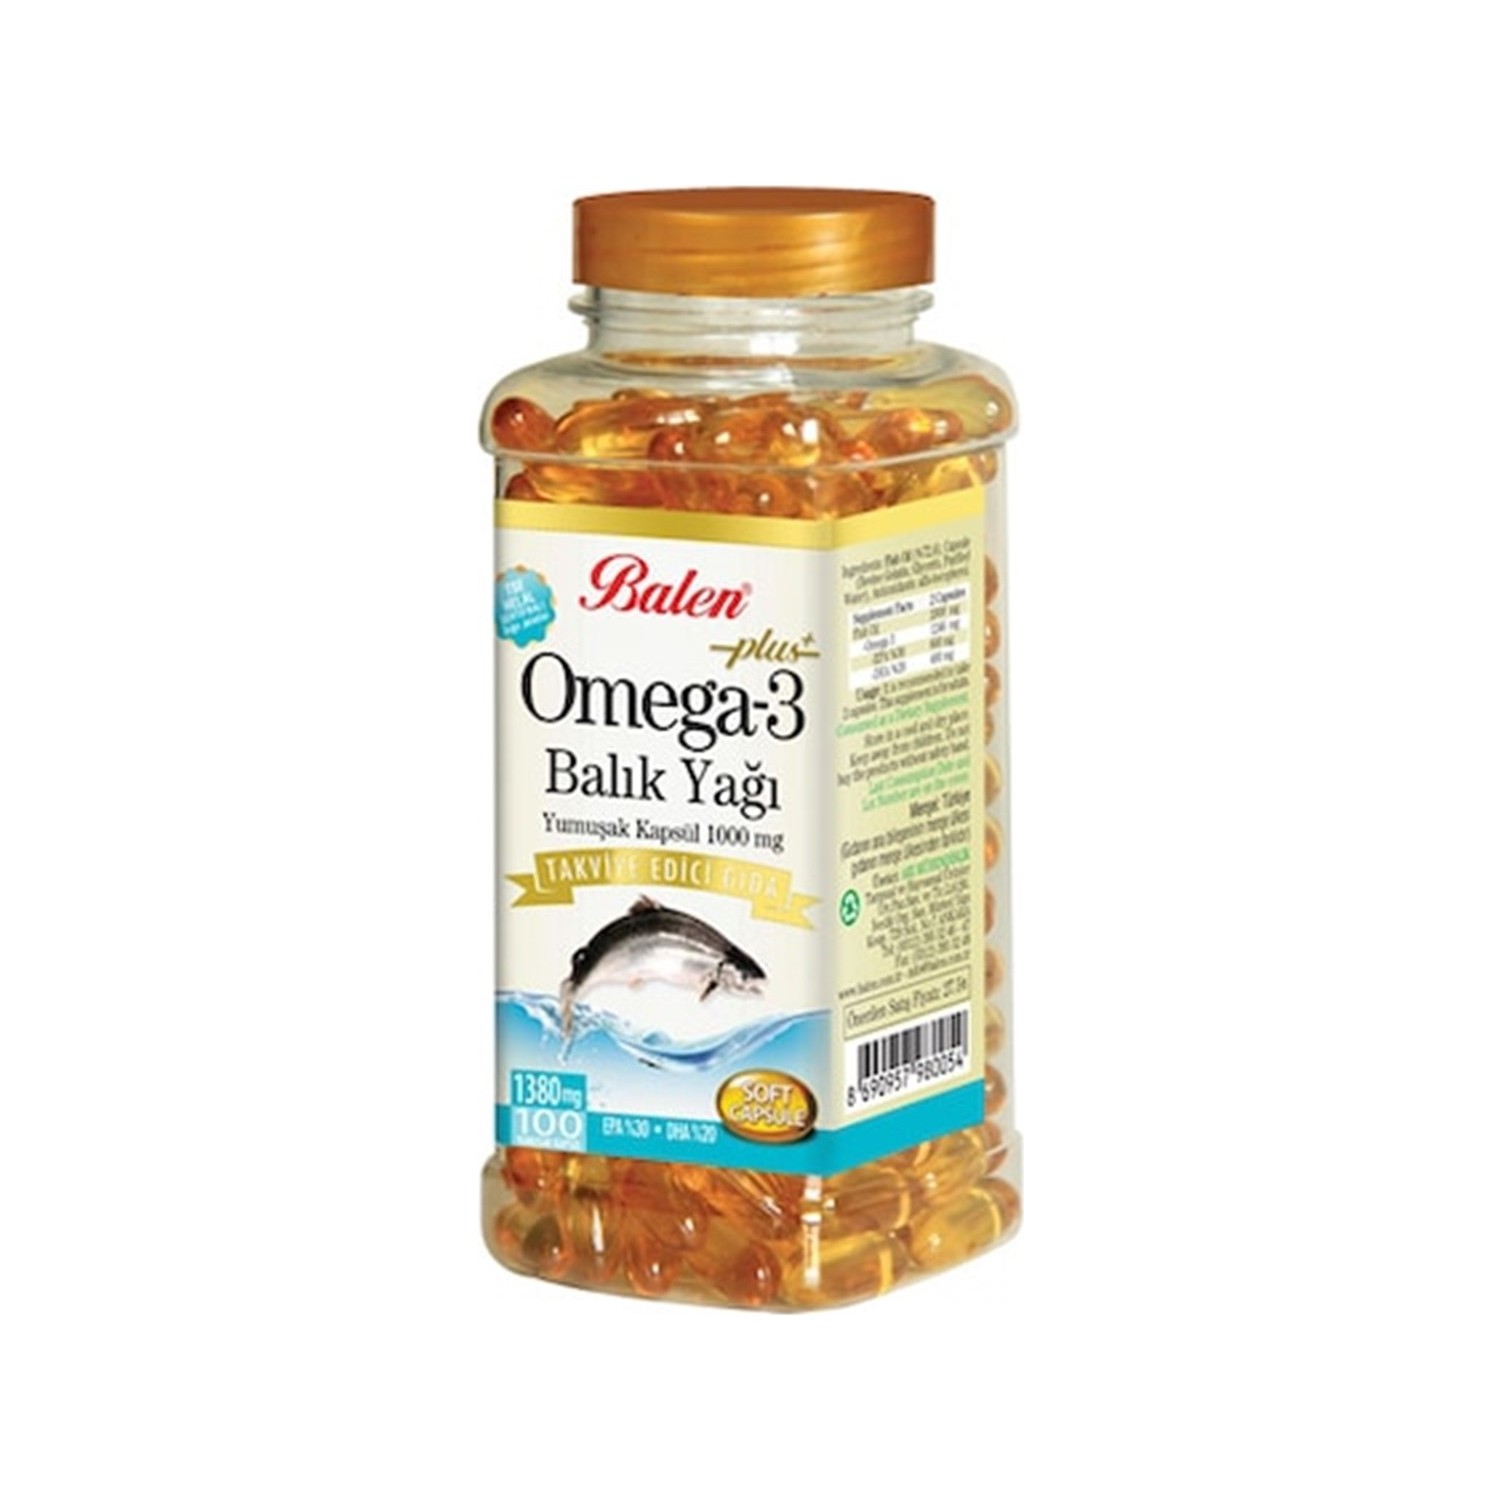 цена Рыбий жир Balen Omega 3, 1380 мг, 100 капсул